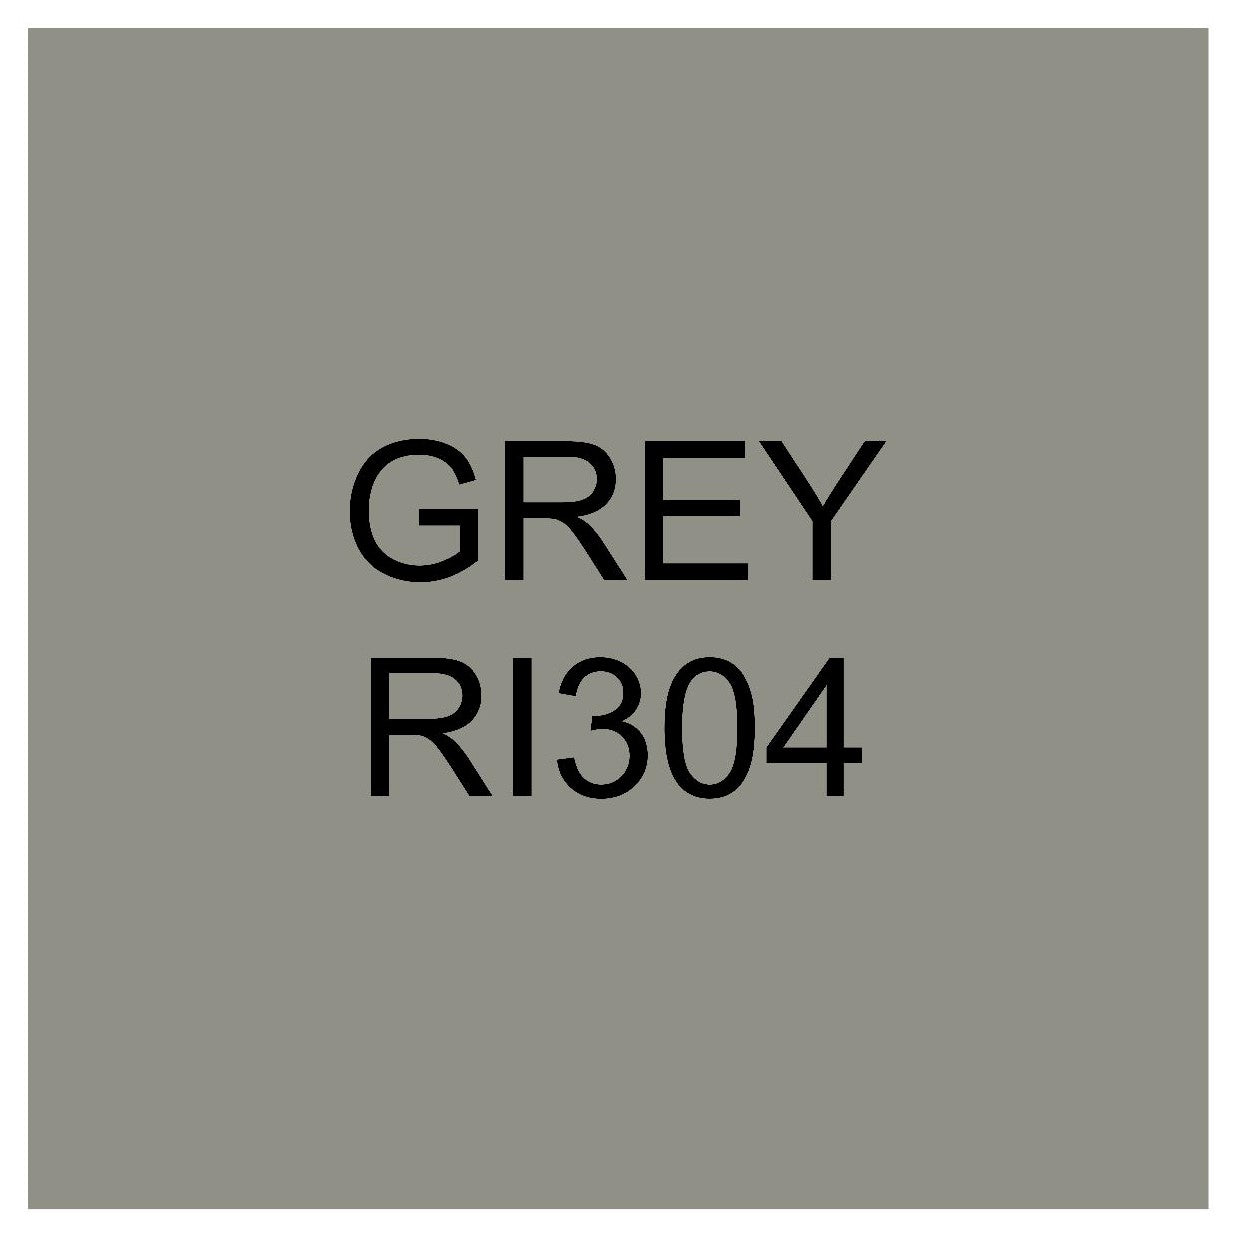 Ritrama RI-304 Grey